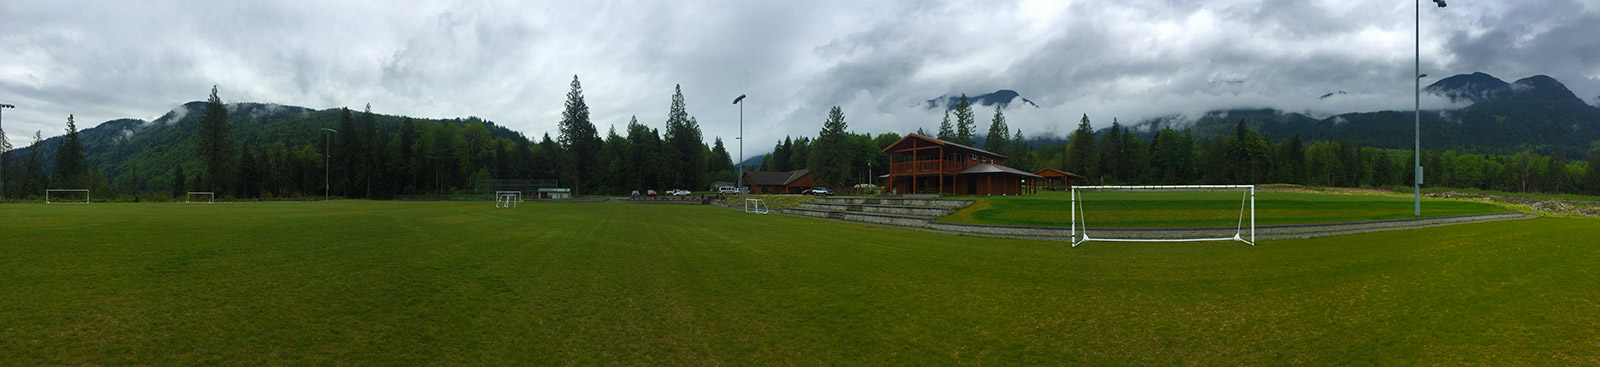 Au premier plan de l’image, un terrain de soccer. À l’arrière-plan, il y a des arbres et des montagnes. Le ciel est gris et nuageux.